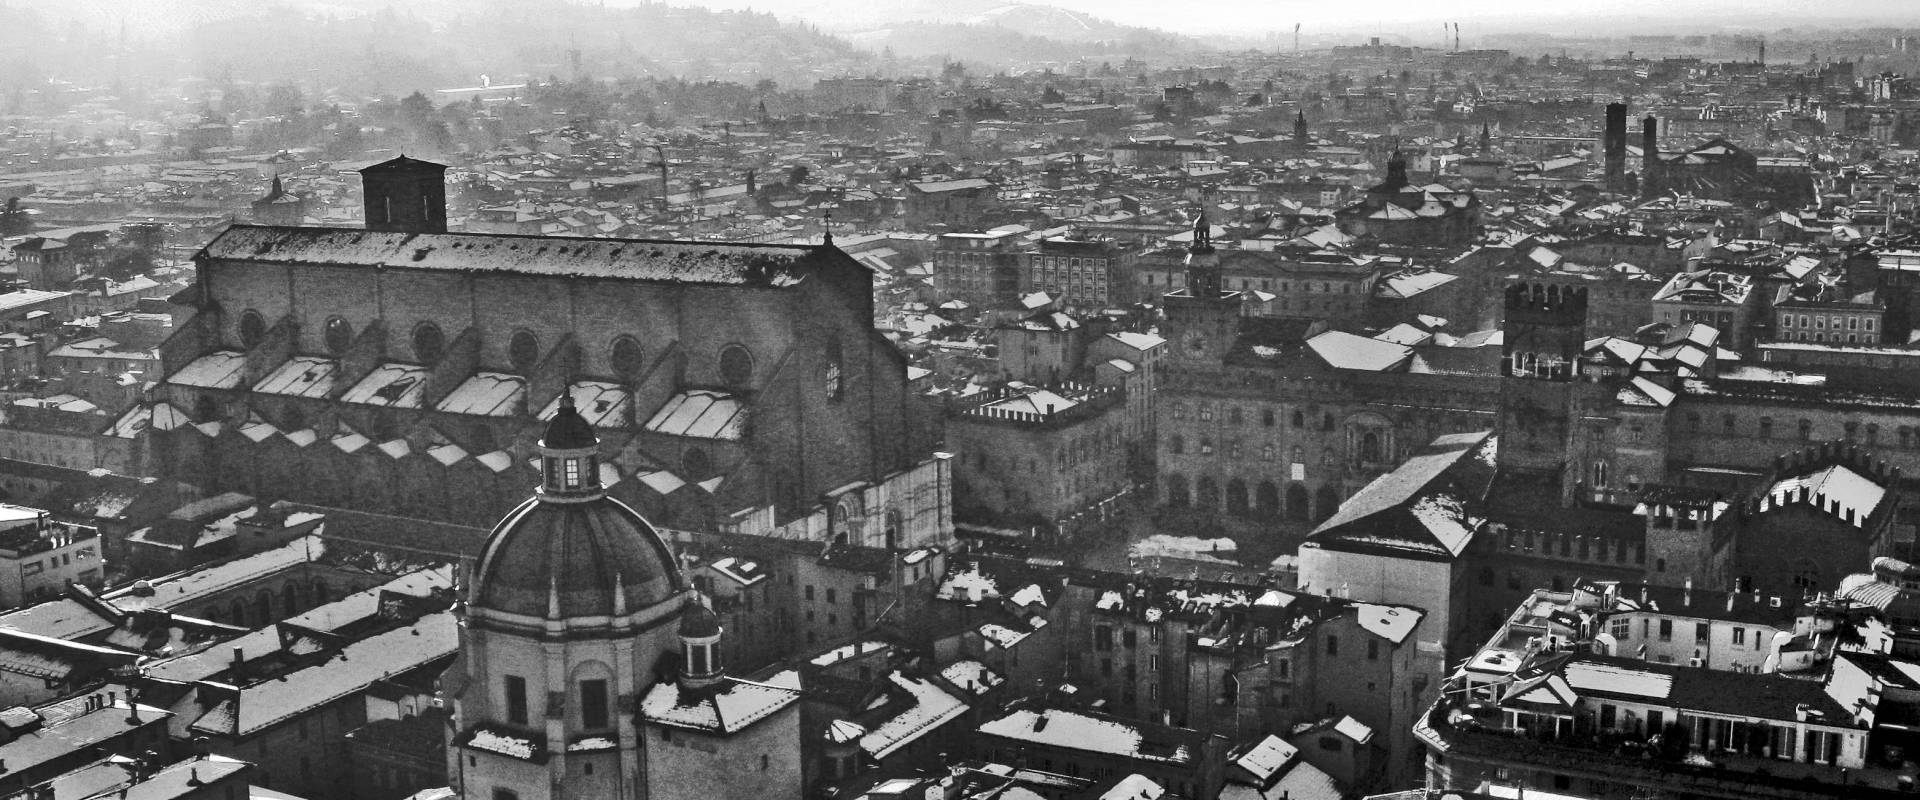 BO - Basilica San Petronio vista dalla Torre degli Asinelli photo by EvelinaRibarova